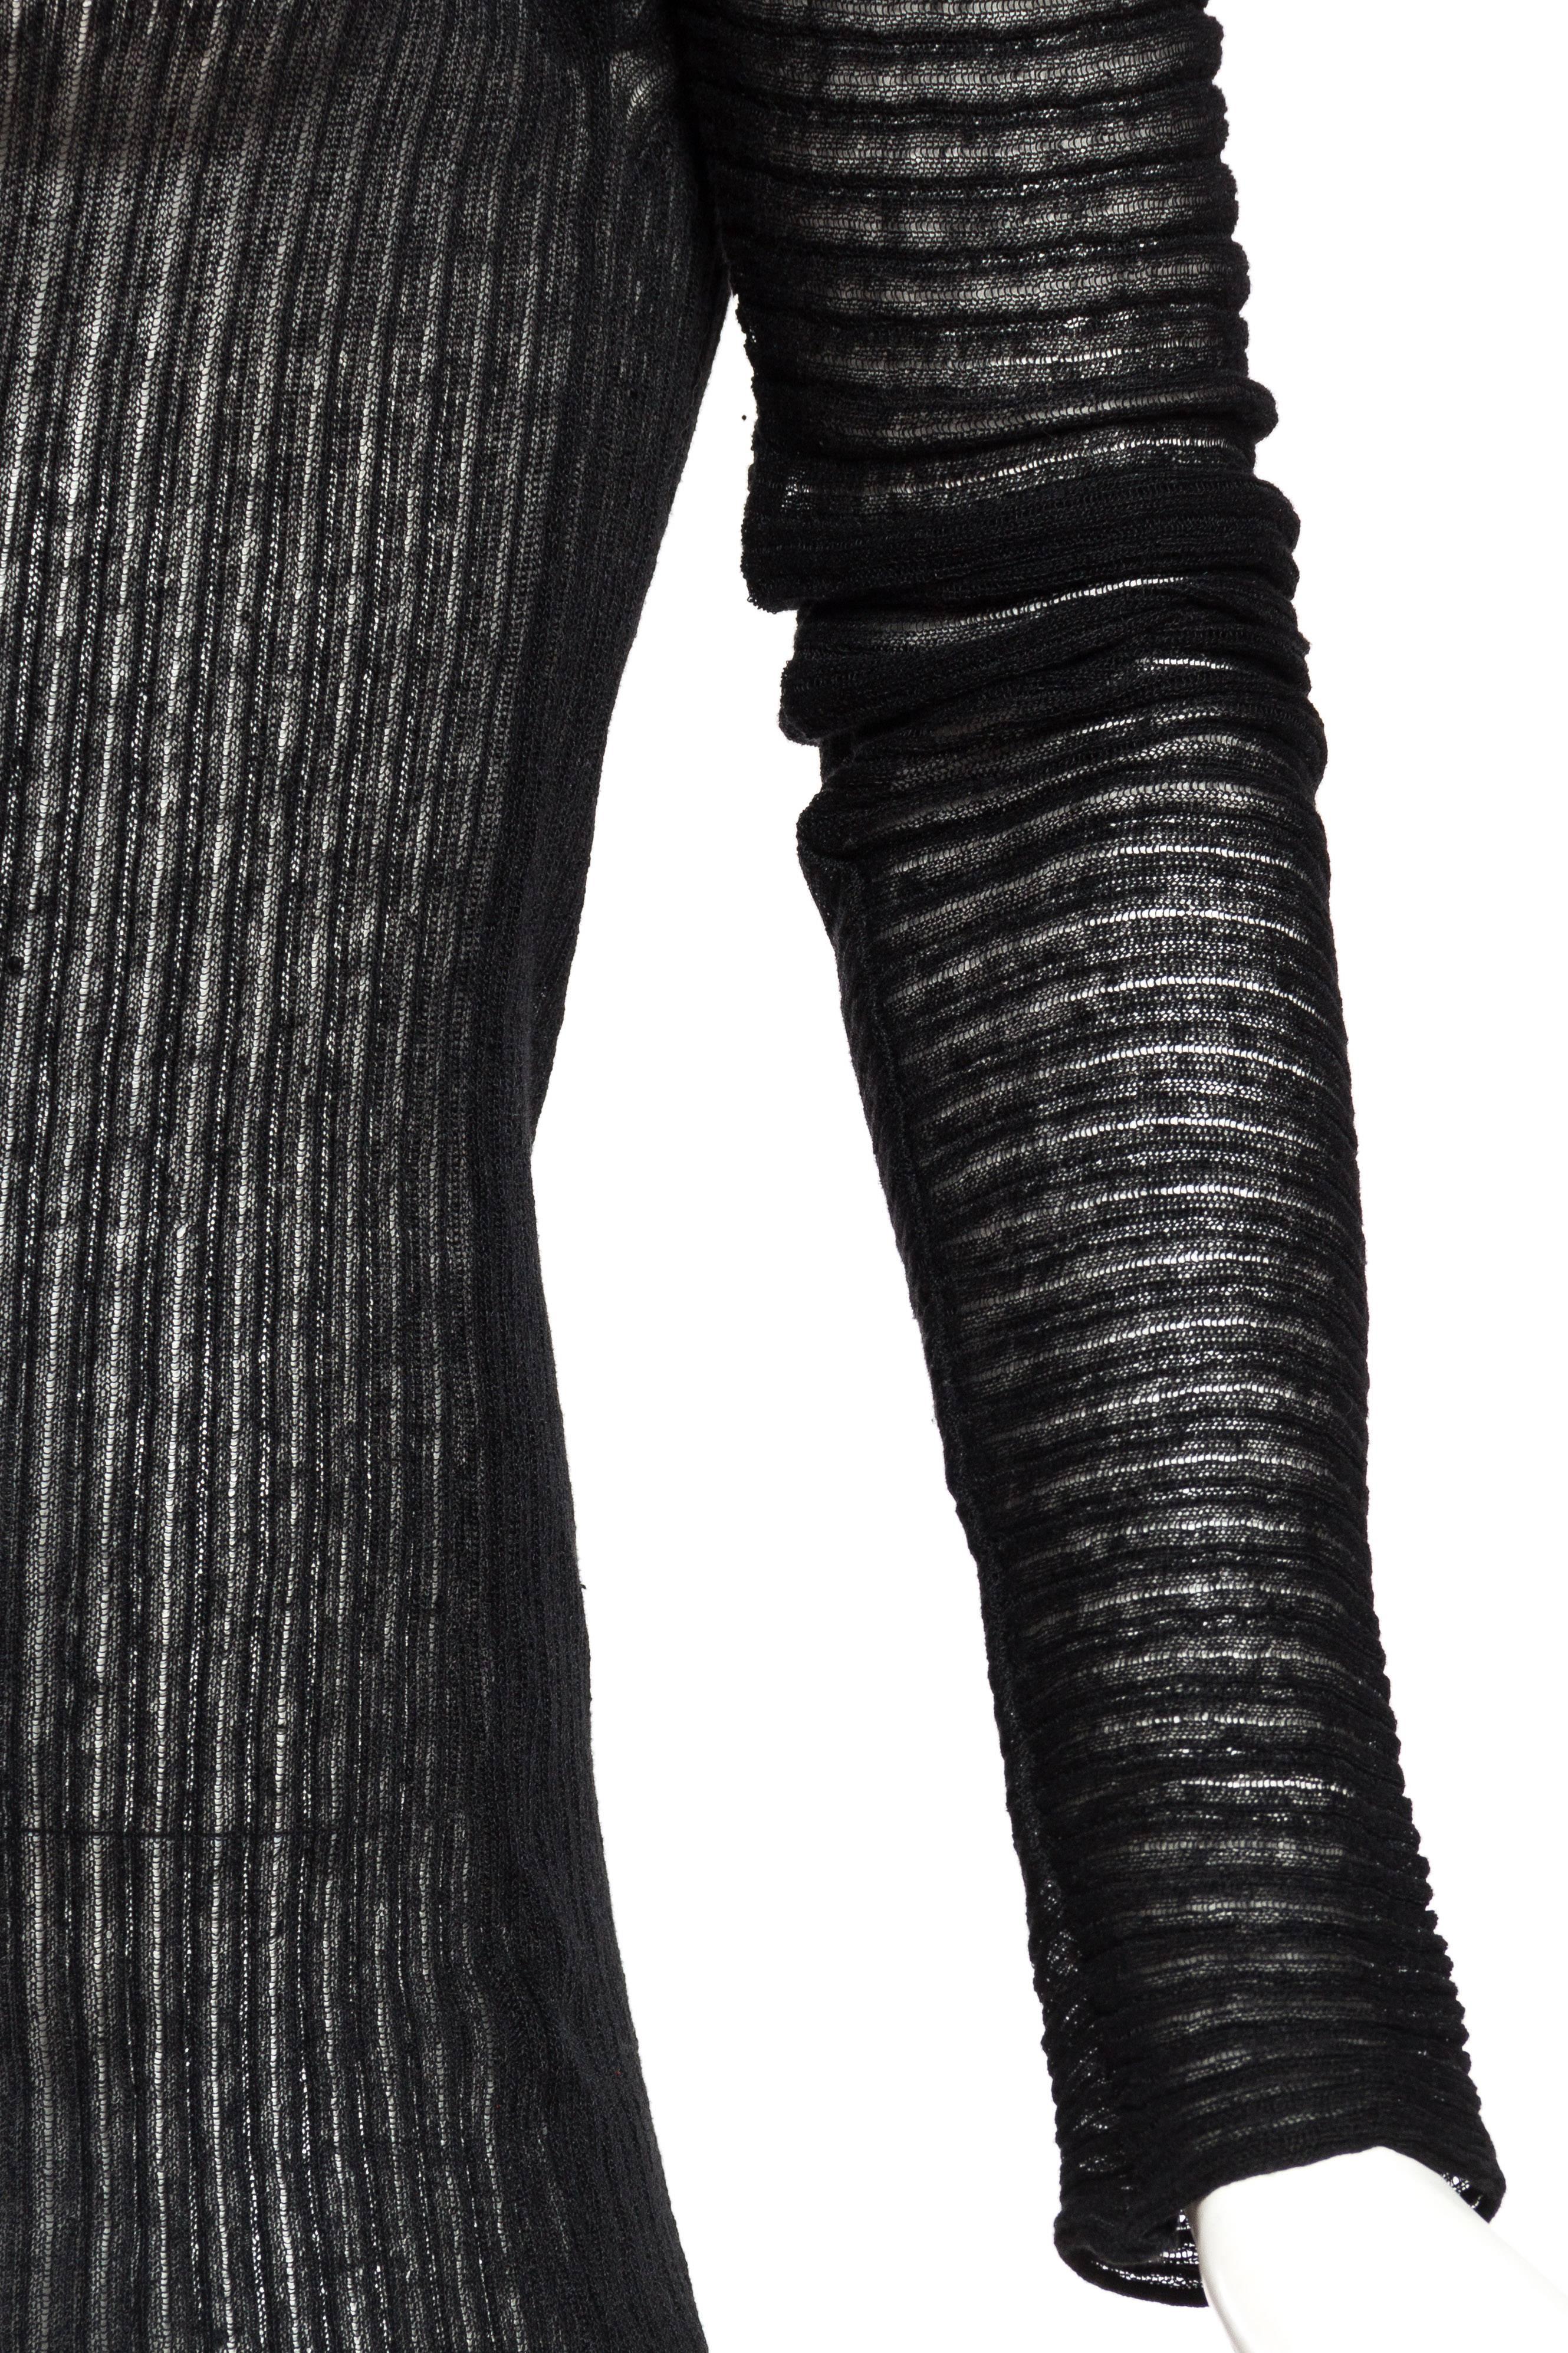 Sheer Knit Dress by Jean Paul Gaultier 2